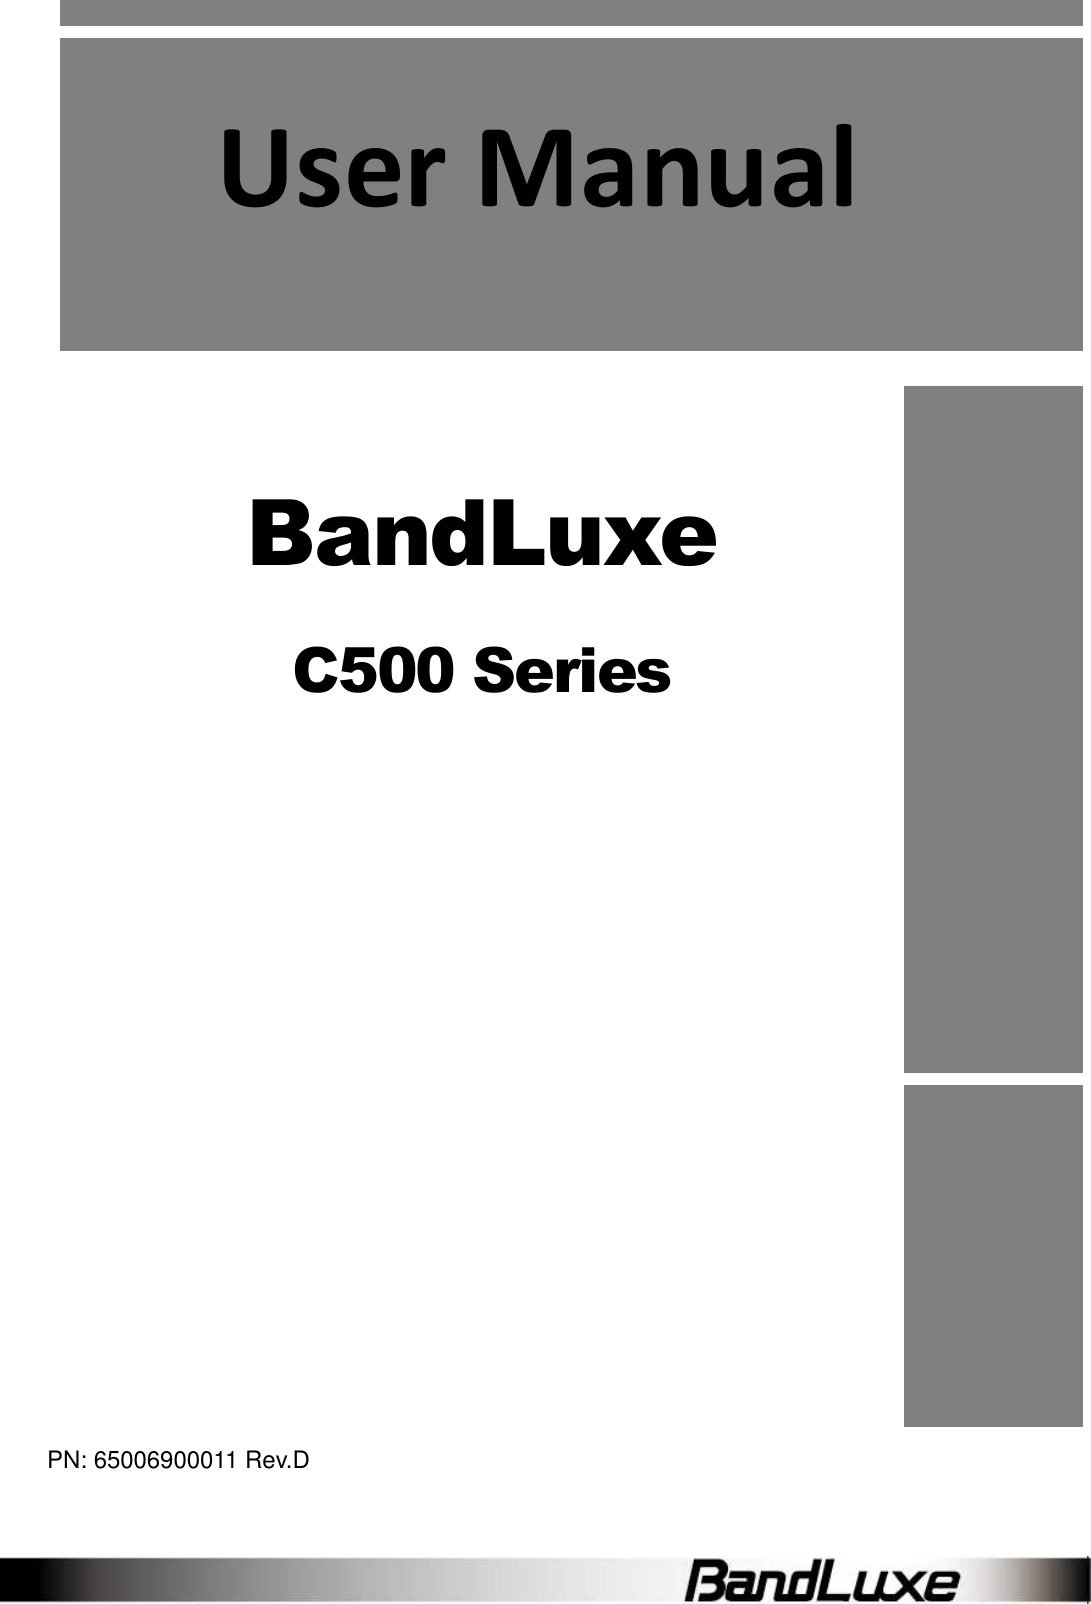              User Manual     BandLuxe C500 Series          PN: 65006900011 Rev.D 